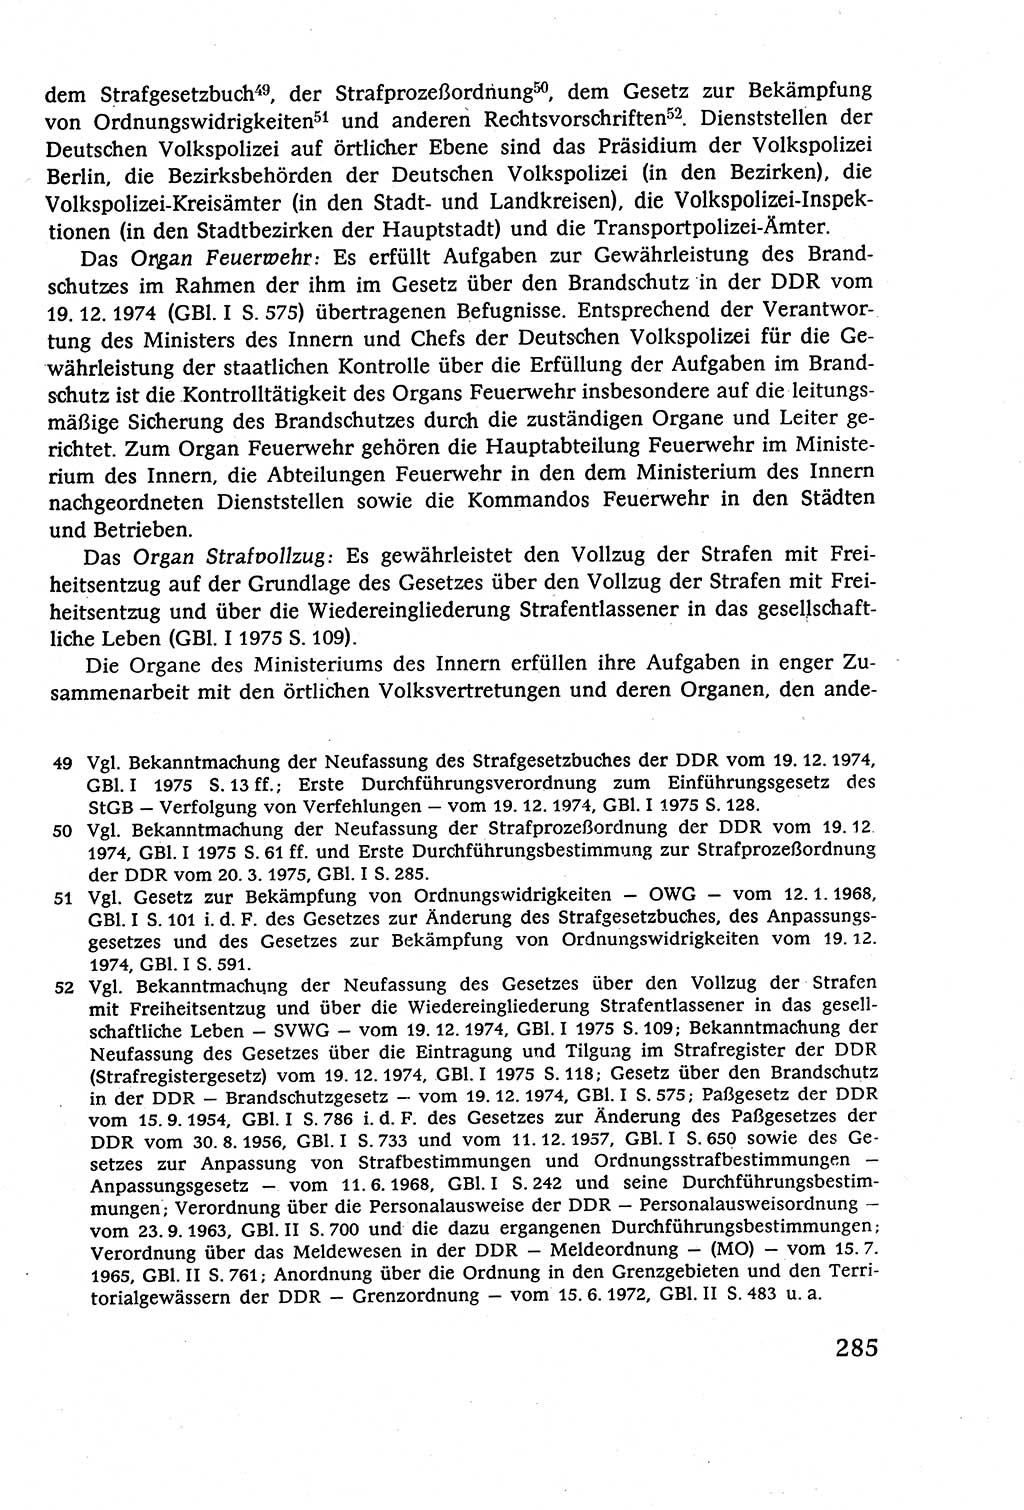 Staatsrecht der DDR (Deutsche Demokratische Republik), Lehrbuch 1977, Seite 285 (St.-R. DDR Lb. 1977, S. 285)